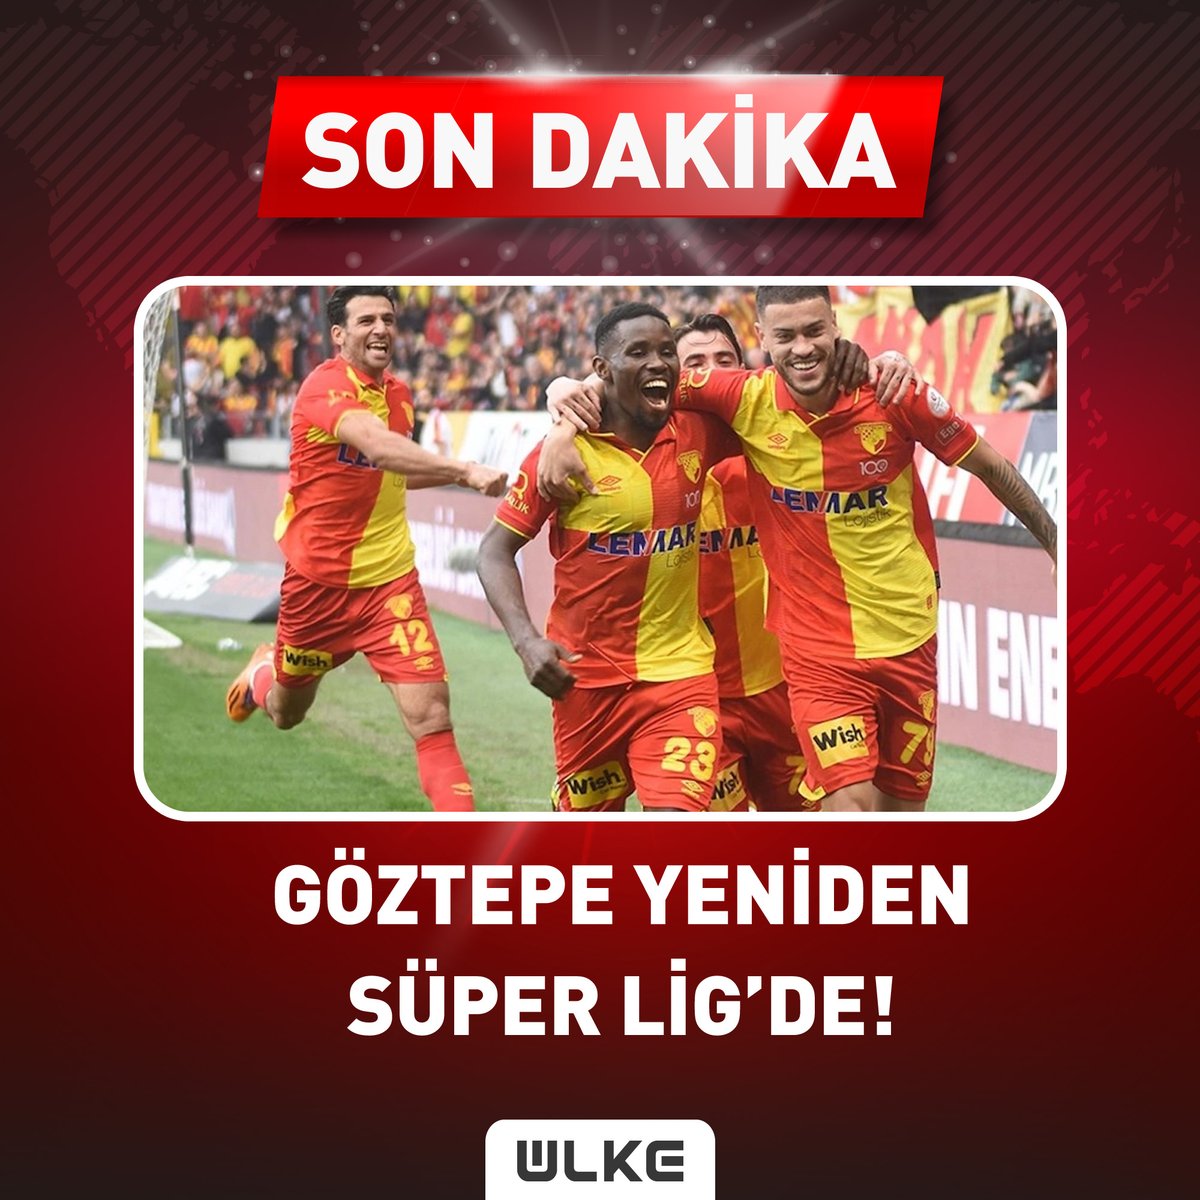 #SONDAKİKA İzmir'in köklü kulübü #Göztepe yeniden Süper Lig'de! #haber